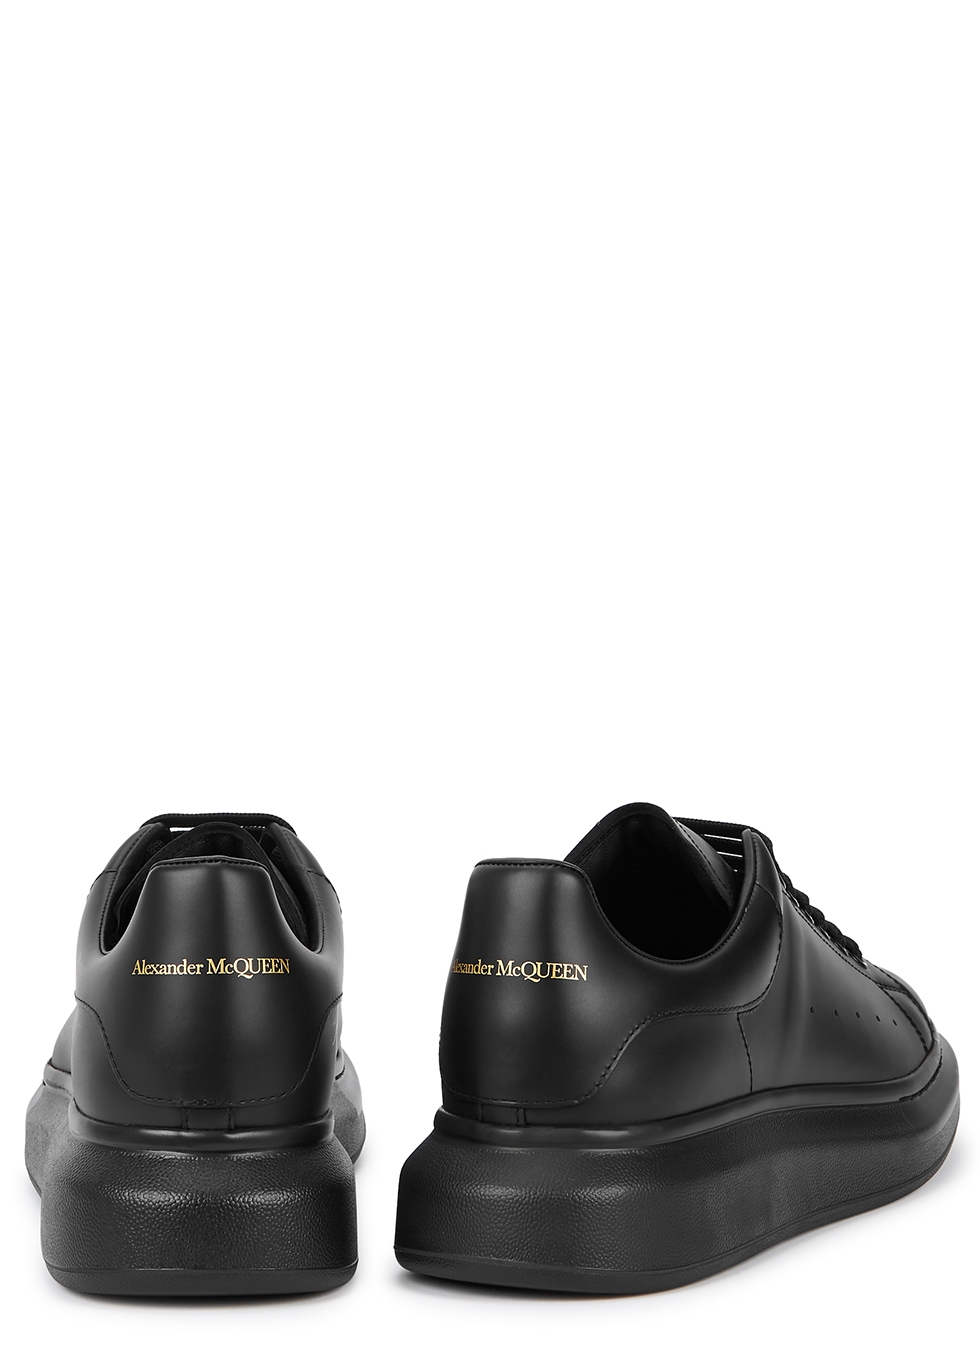 alexander mcqueen black shoes